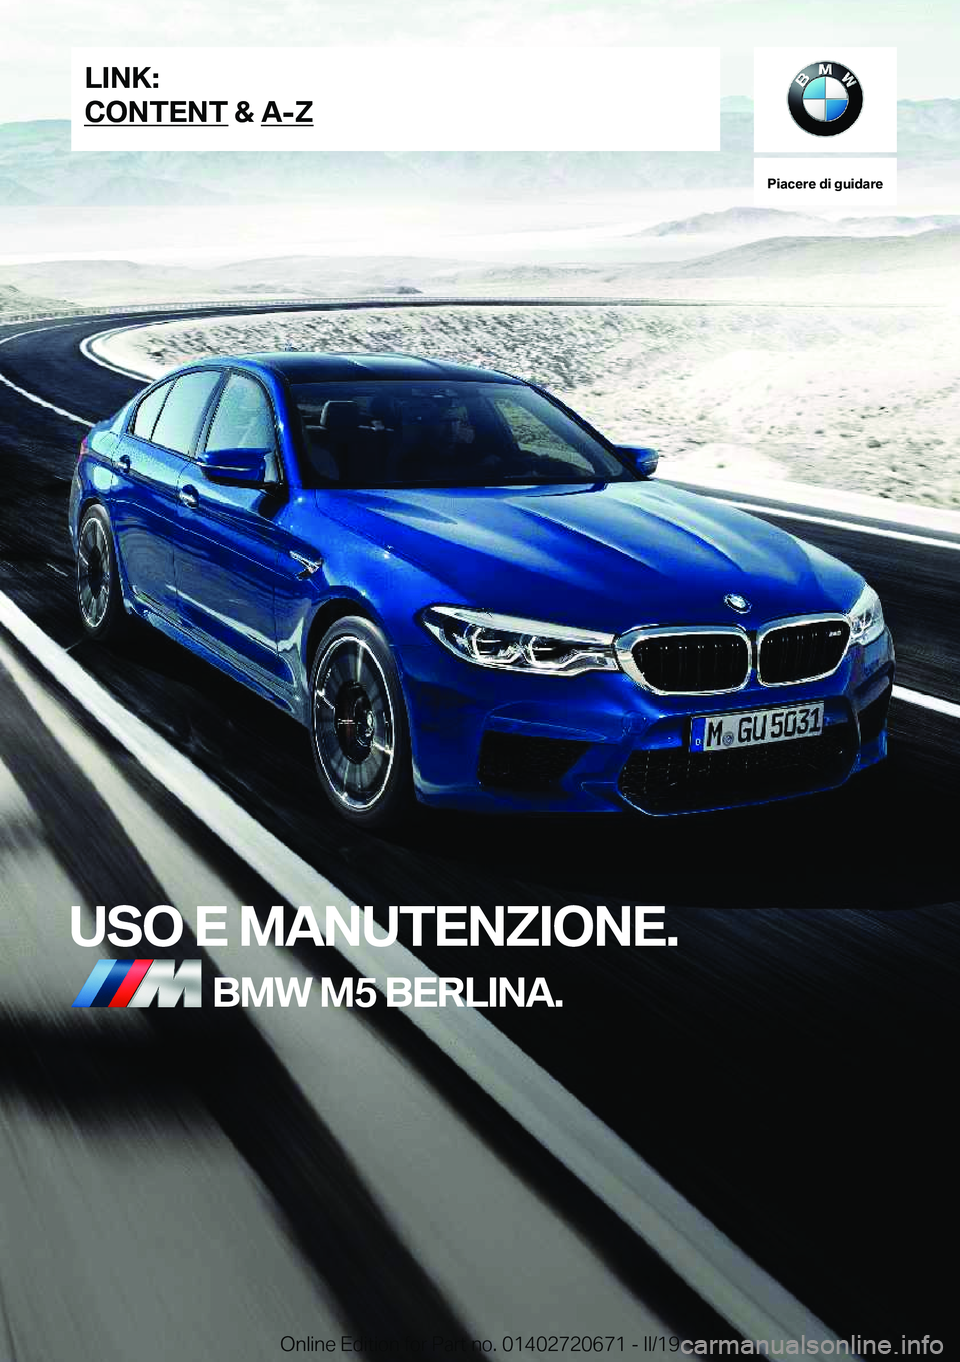 BMW M5 2019  Libretti Di Uso E manutenzione (in Italian) �P�i�a�c�e�r�e��d�i��g�u�i�d�a�r�e
�U�S�O��E��M�A�N�U�T�E�N�Z�I�O�N�E�.�B�M�W��M�5��B�E�R�L�I�N�A�.�L�I�N�K�:
�C�O�N�T�E�N�T��&��A�-�Z�O�n�l�i�n�e��E�d�i�t�i�o�n��f�o�r��P�a�r�t��n�o�.��0